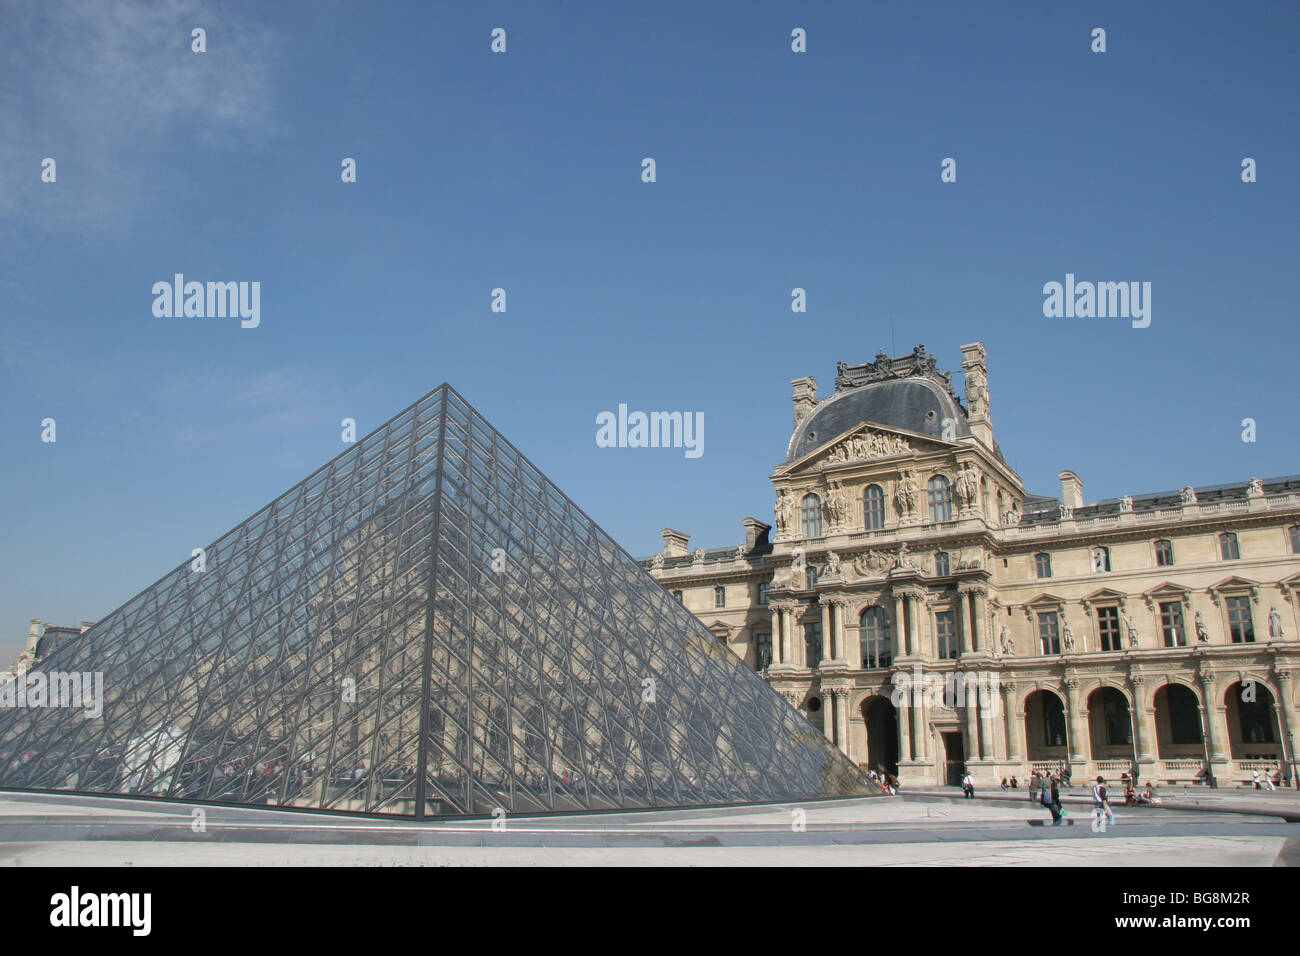 Il museo del Louvre. La grande piramide in vetro. Le piramidi è stato progettato dall'architetto Leone Ming Pei, nel 1981. Parigi. La Francia. Foto Stock